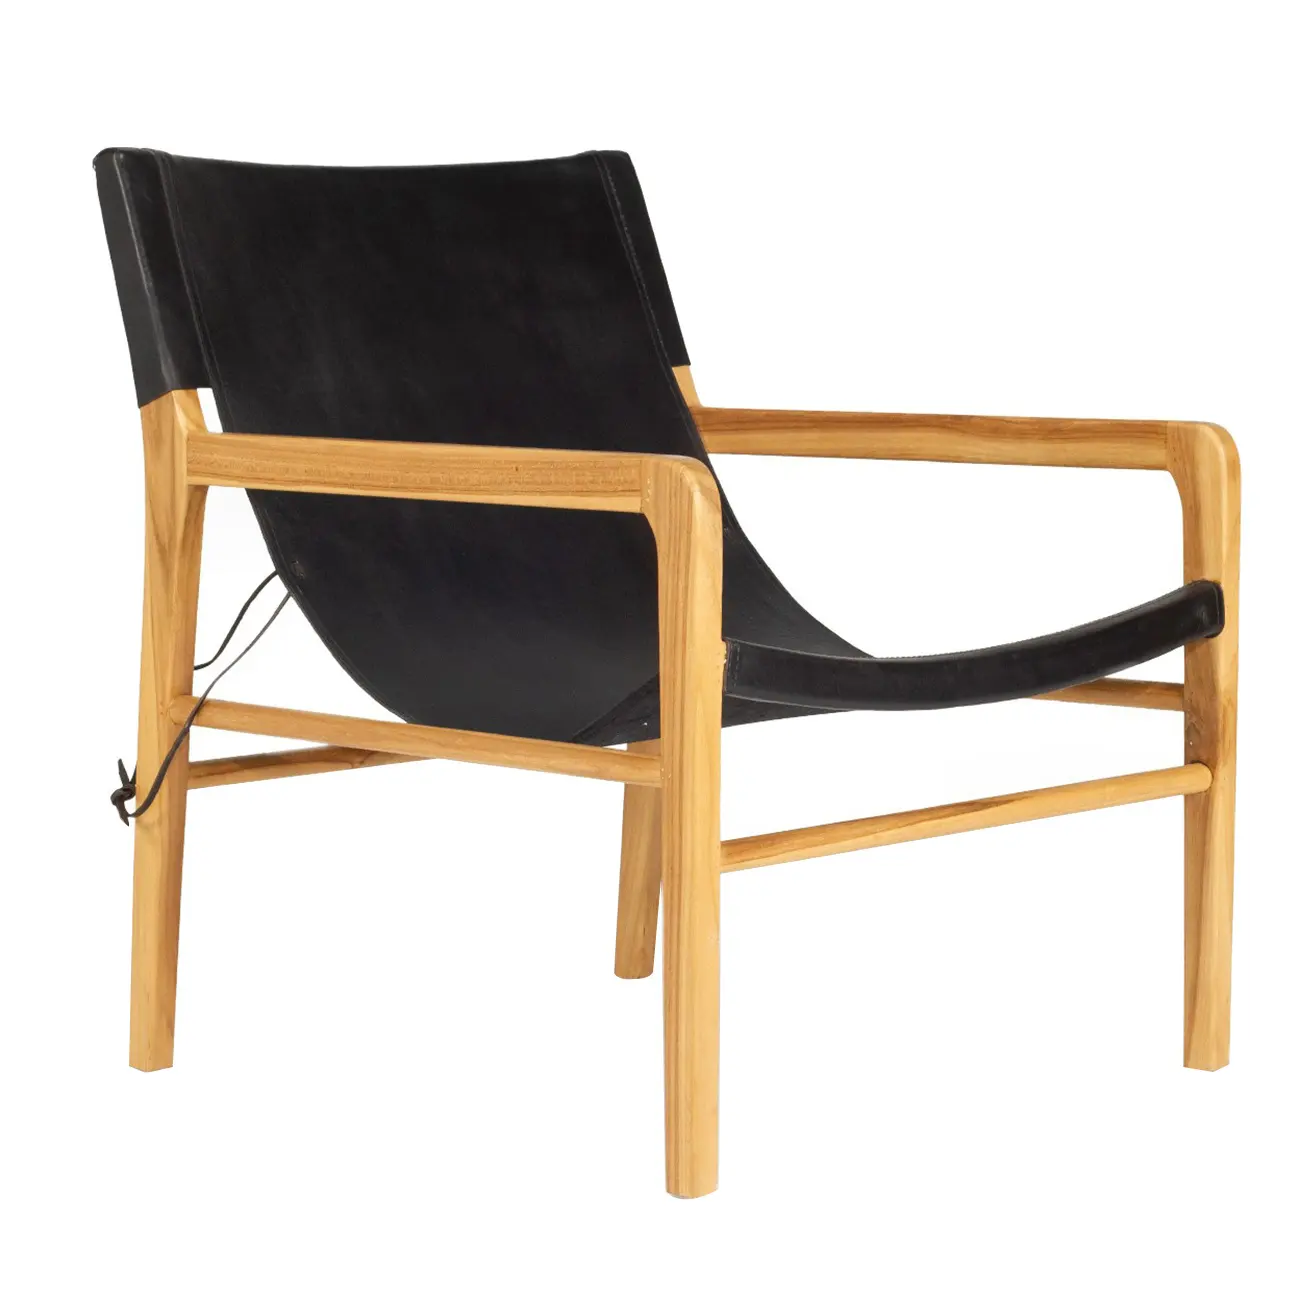 كرسي الشاطئ lippy المصنوع من خشب الساج الصلب مع مقعد من جلد البولي يوريثان والظهر للاستخدام الخارجي والداخلي